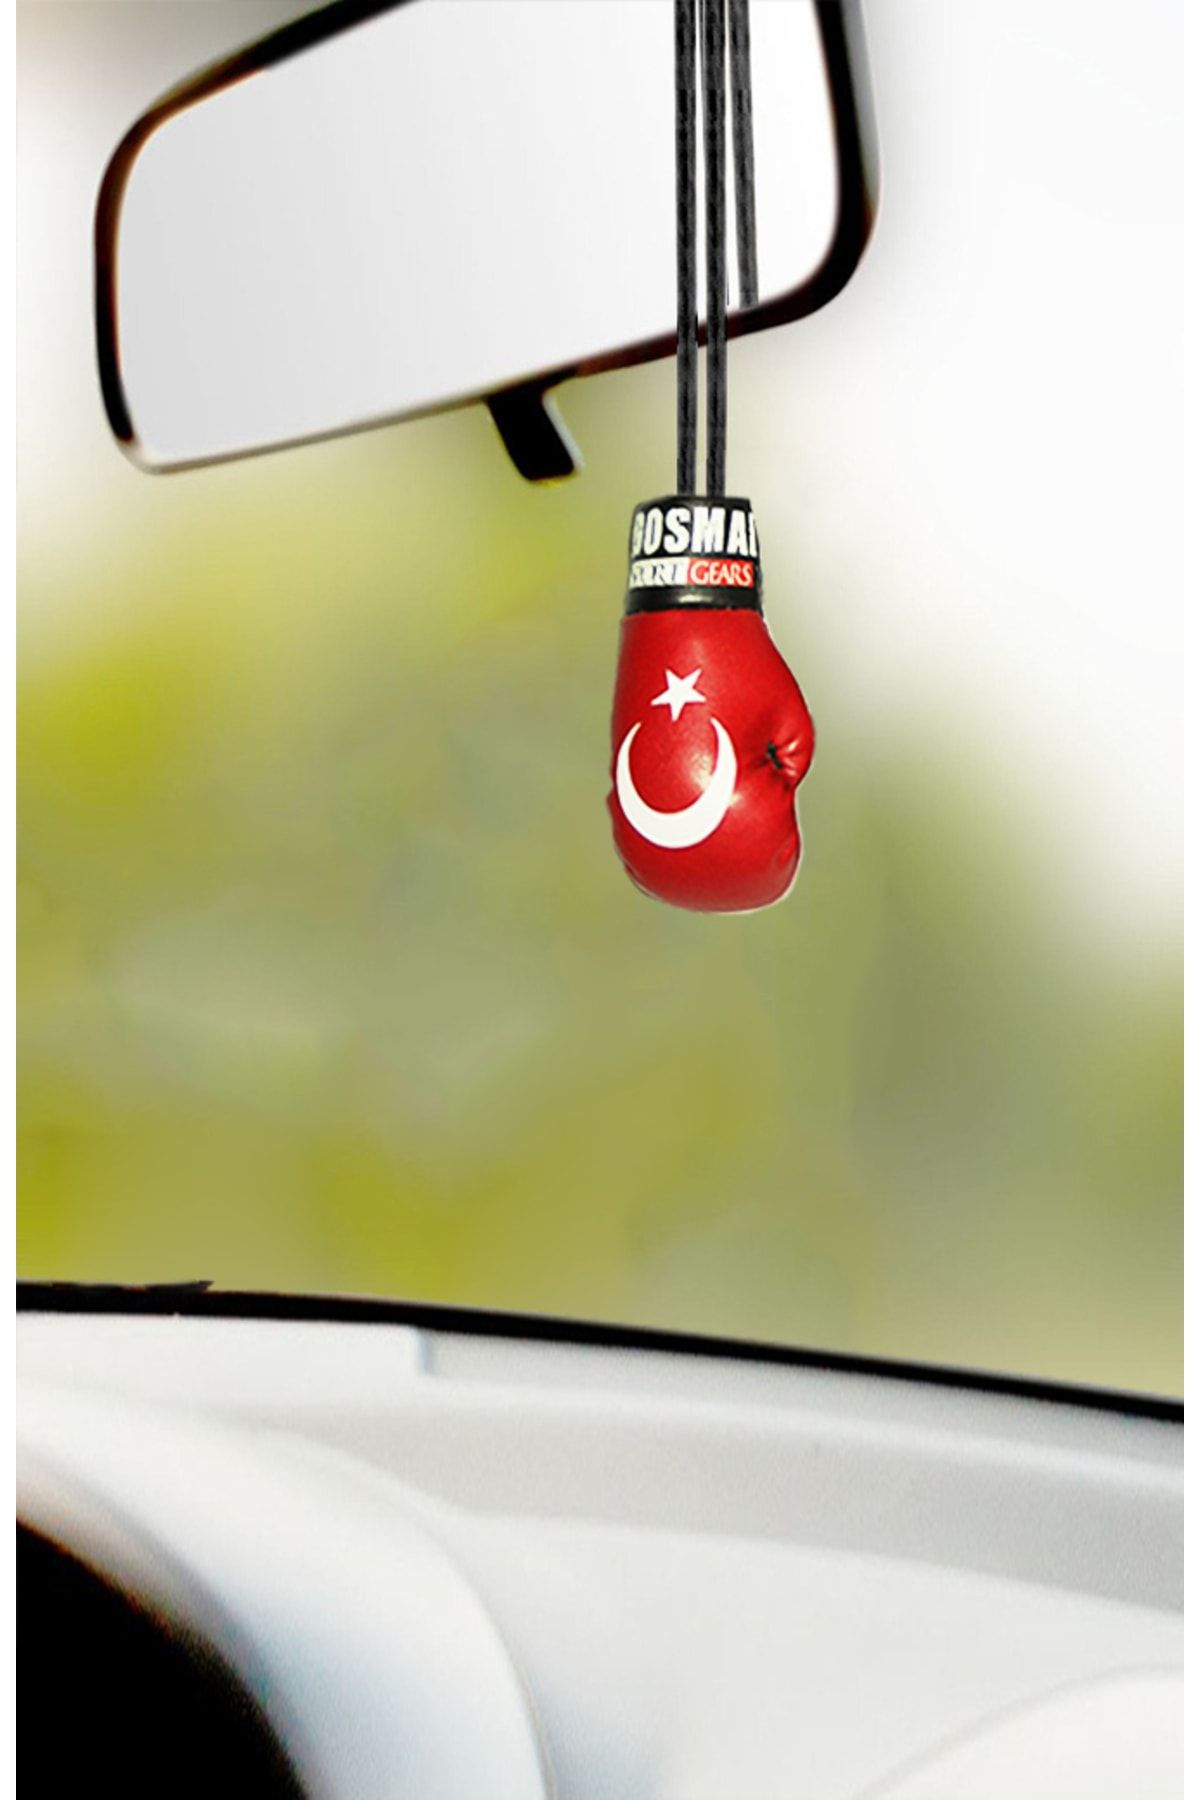 DO-SMAI Mini Boks Eldiveni El Yapımı Türk Bayrağı Baskılı Dikiz Aynası Süsü Hkbe997